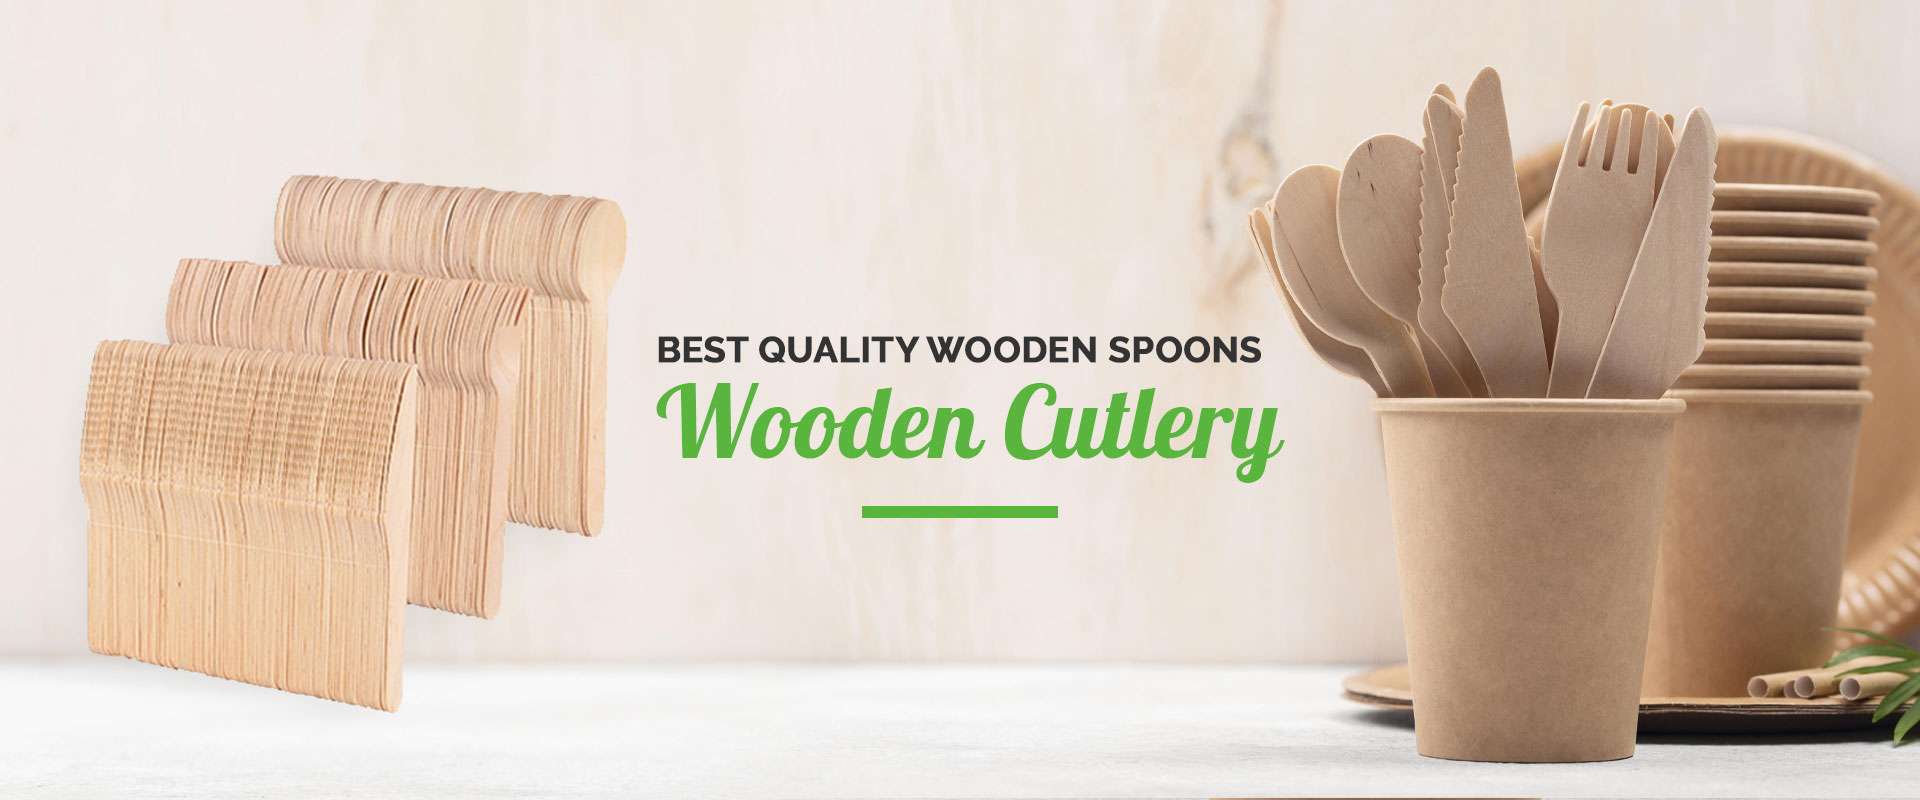  Wooden Cutlery Manufacturers in Uttar Pradesh